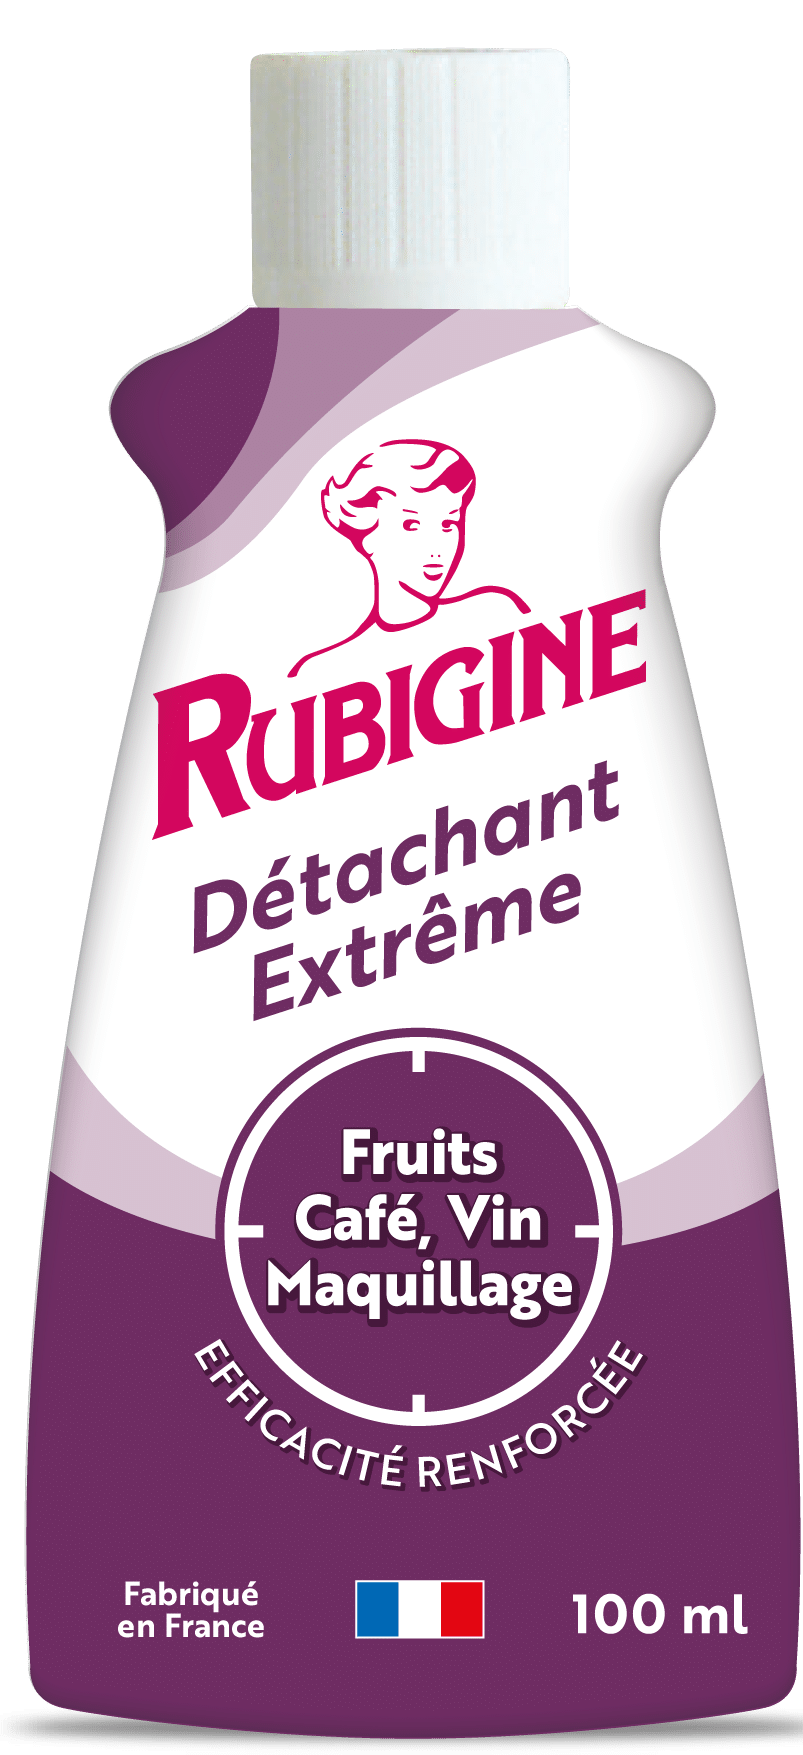 Emballage du produit Rubigine  fruits, café, vin